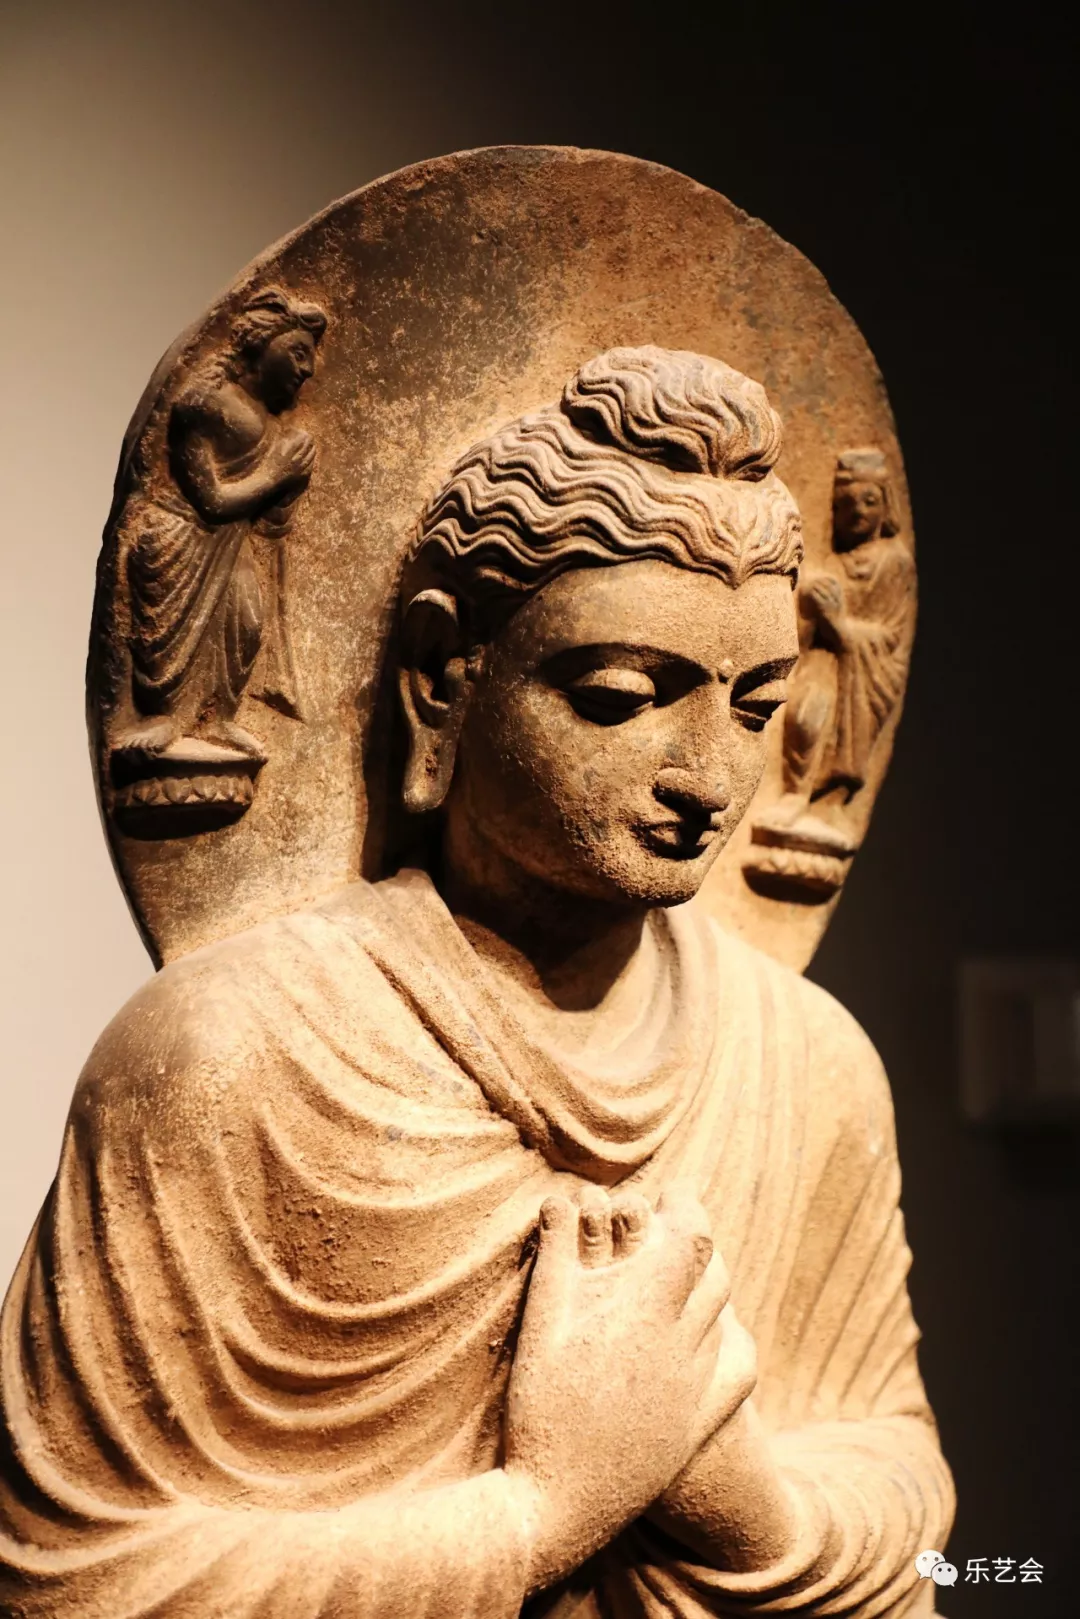 古代印度,佛教,印度教,耆那教等创出种类繁多的神像并通过雕刻形式